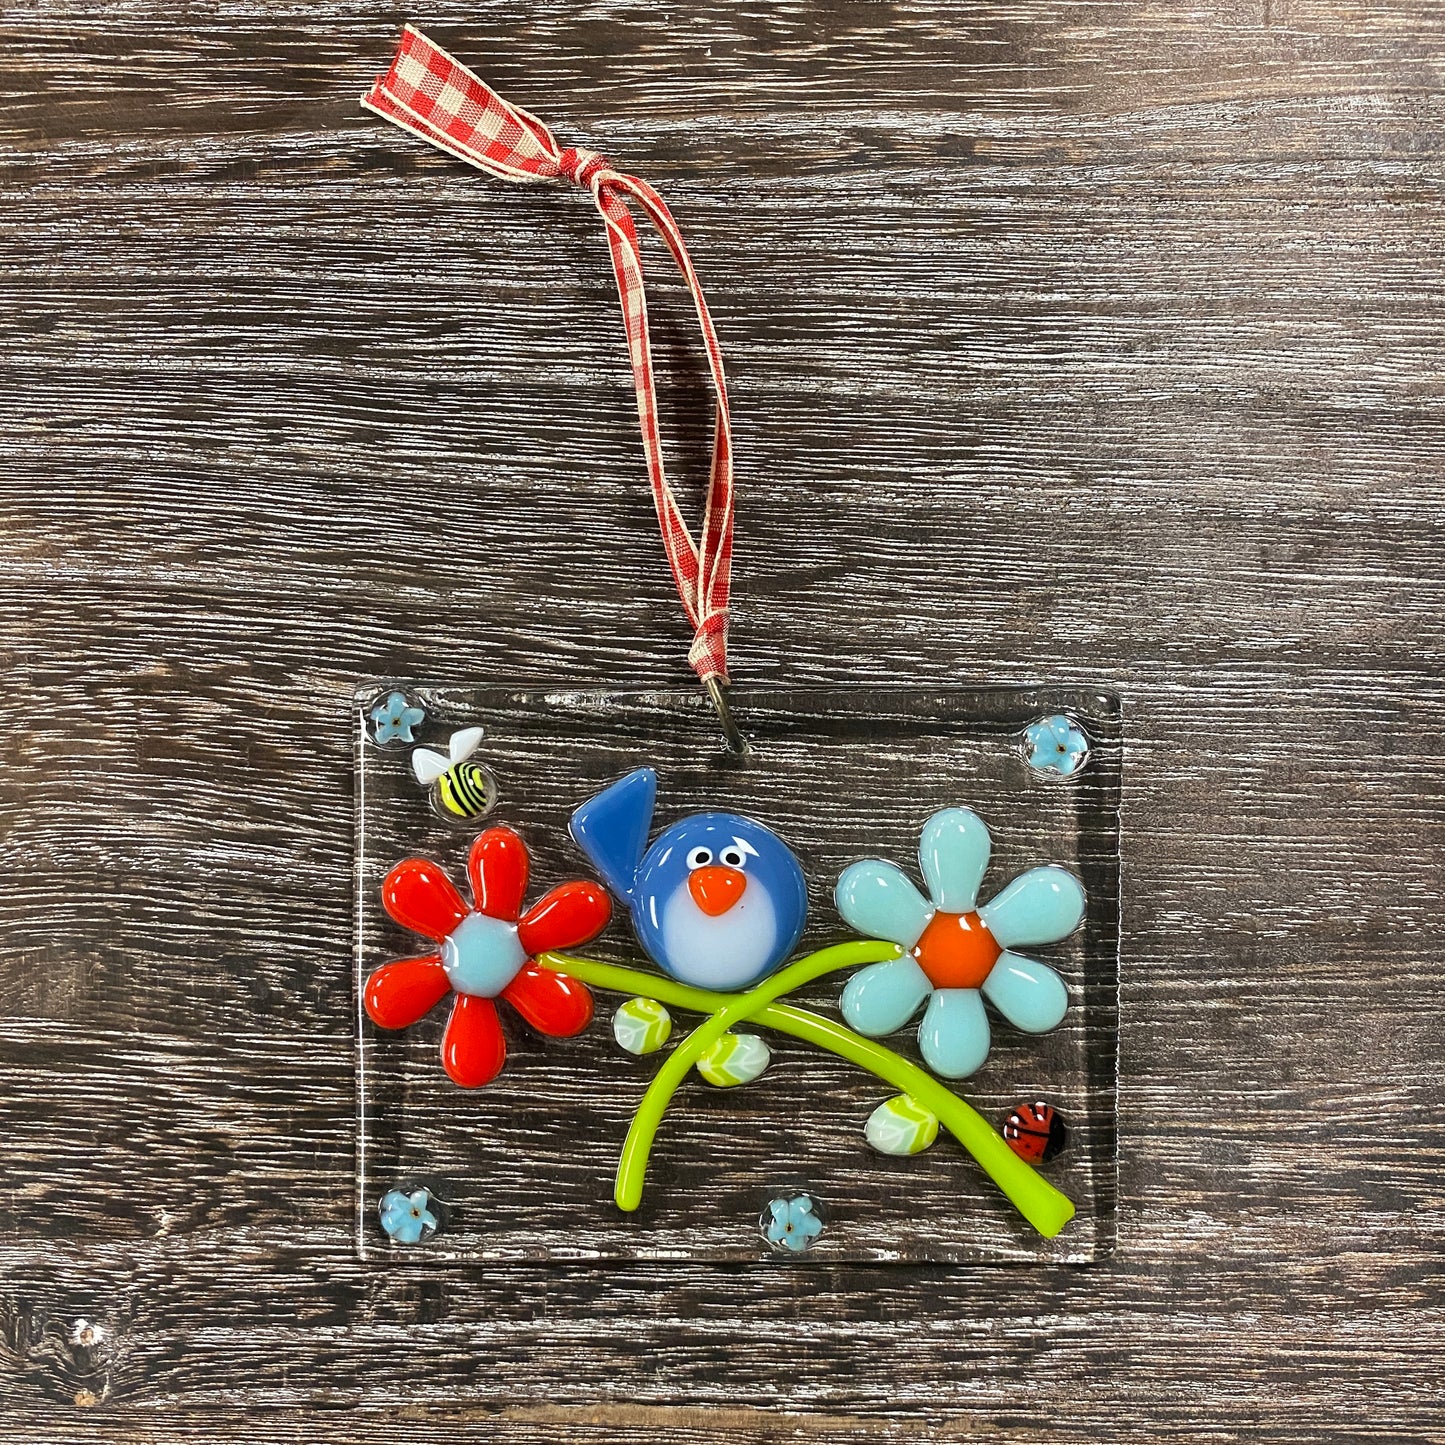 Fused Glass Suncatcher Ornament - Bird on Flower